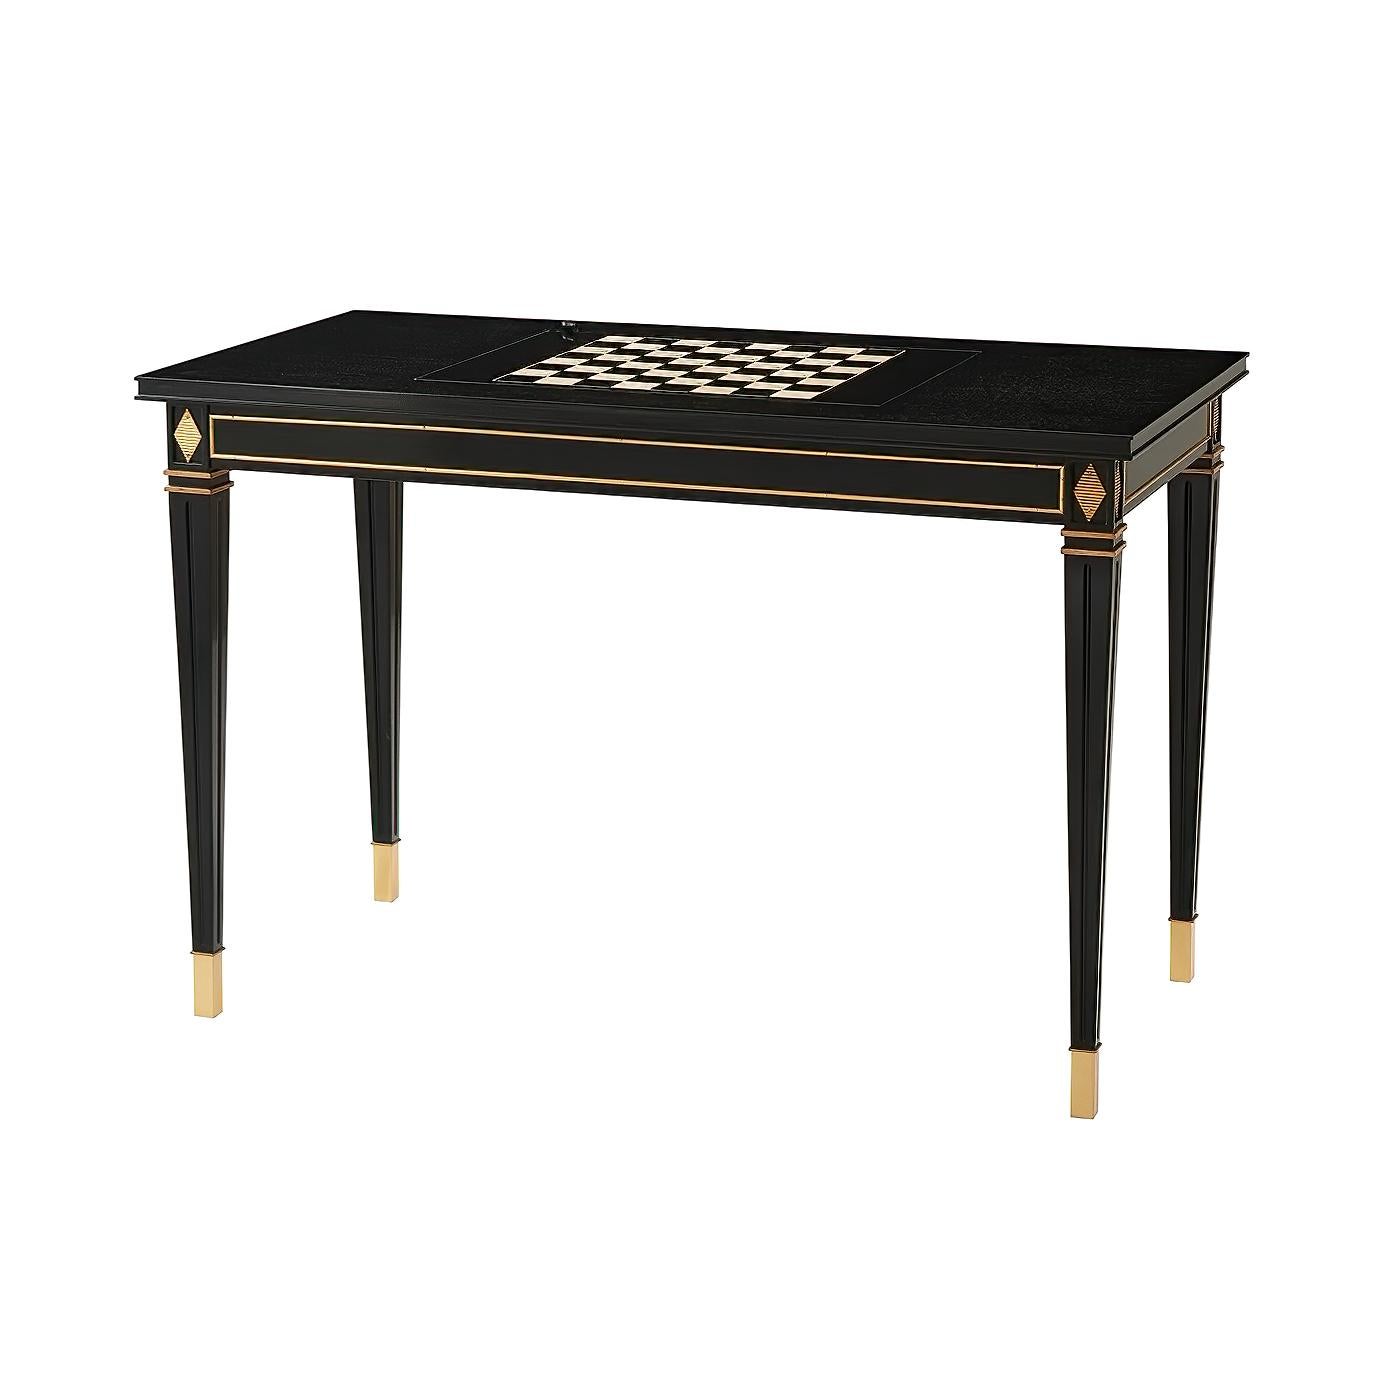 Ein Spieltisch im französischen Stil, der in einen Schreibtisch umgewandelt werden kann. Der Tisch aus ebonisiertem Mahagoni mit einer wendbaren Platte mit einem Backgammon und einem Schach-/Scheckerbrett mit Zählwerk, mit zwei Schubladen auf dem